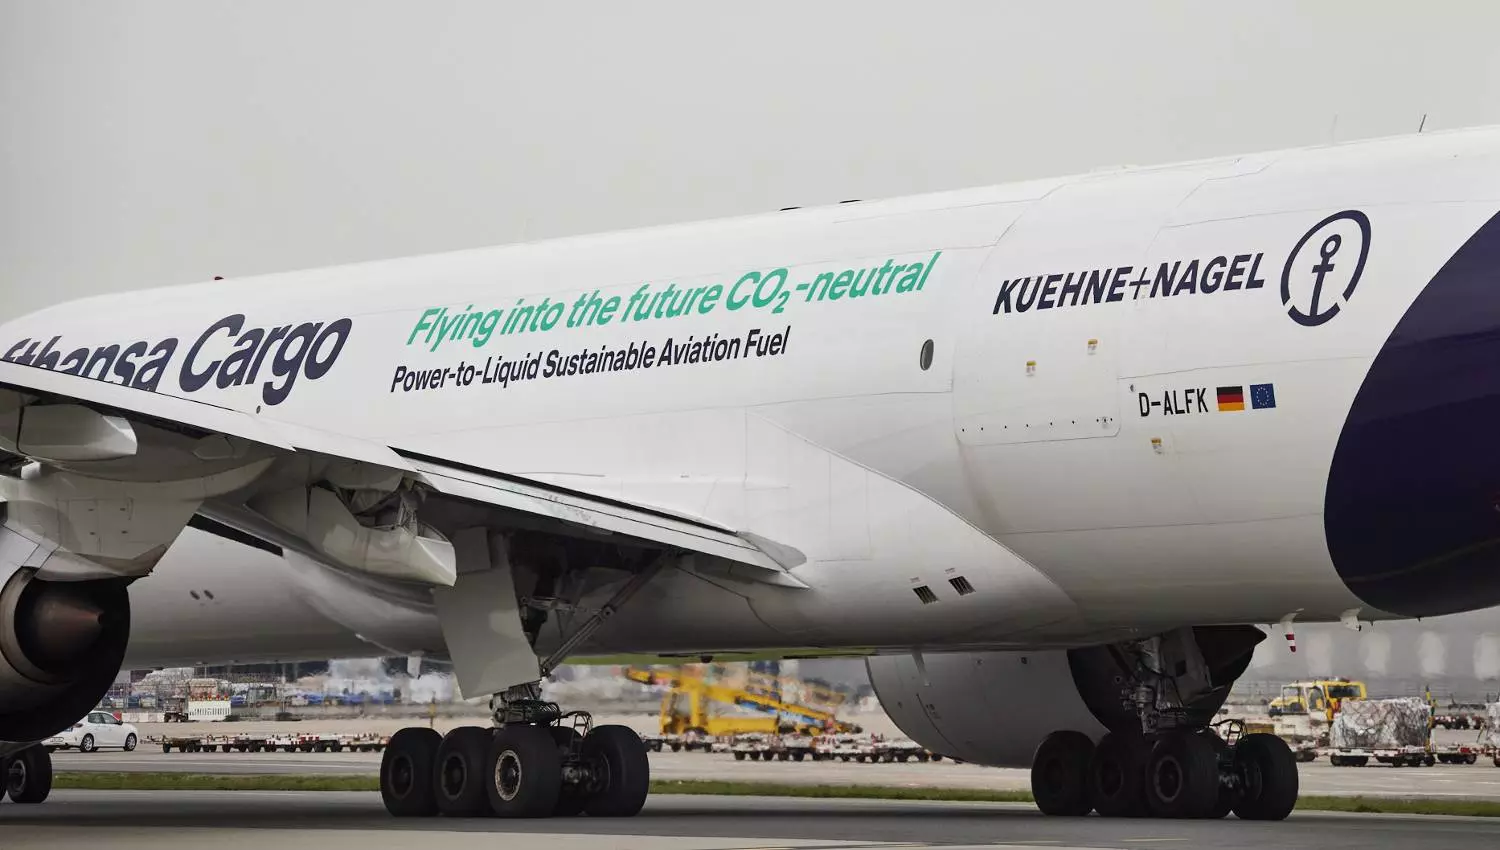 Kuehne+Nagel & Lufthansa Cargo back power to liquid technology